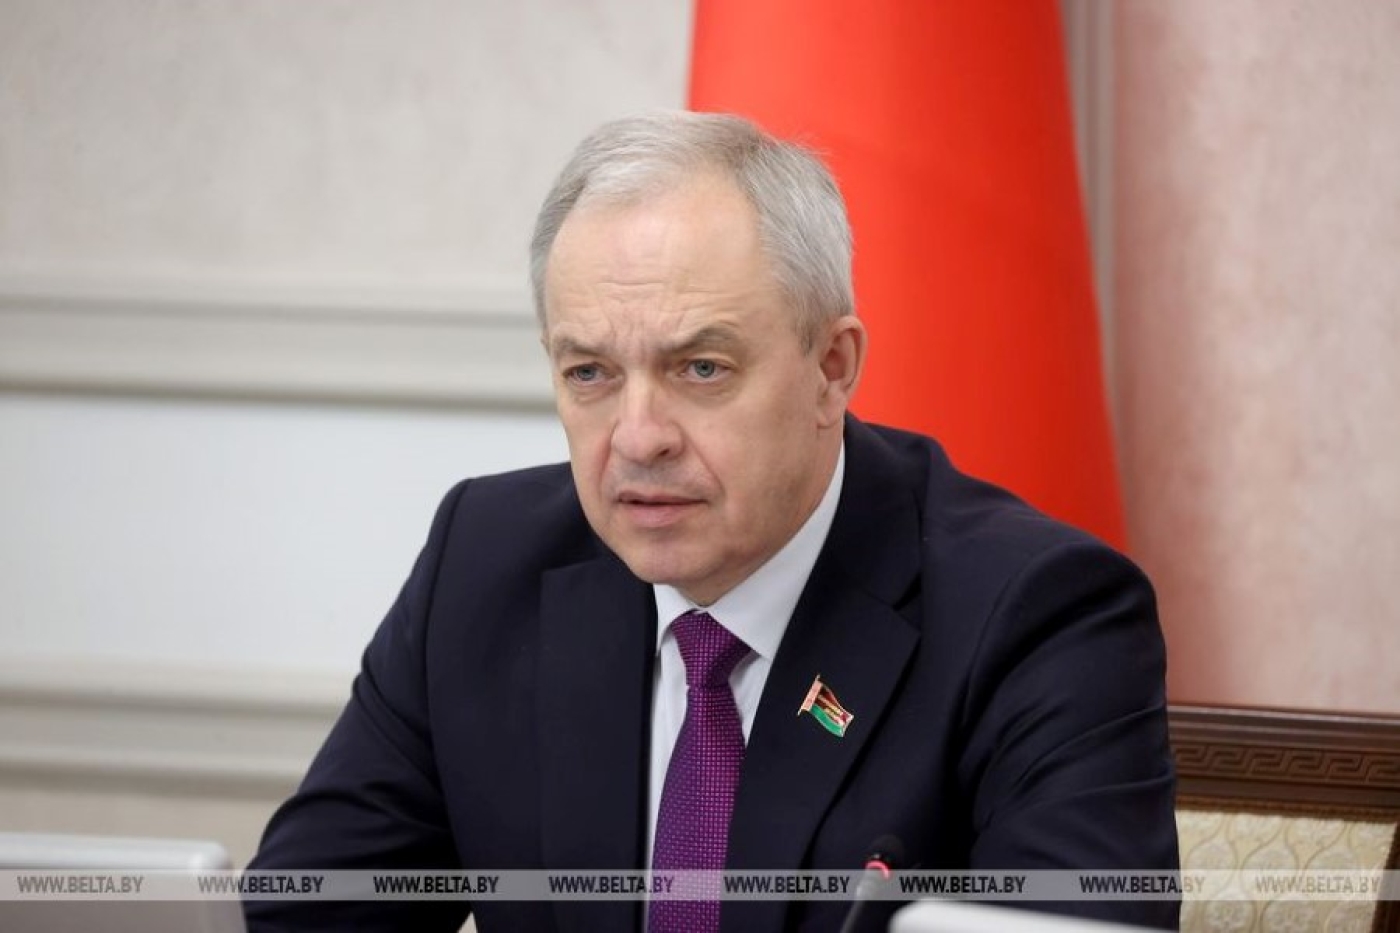 ВНС откроет новую страницу в развитии суверенной Беларуси